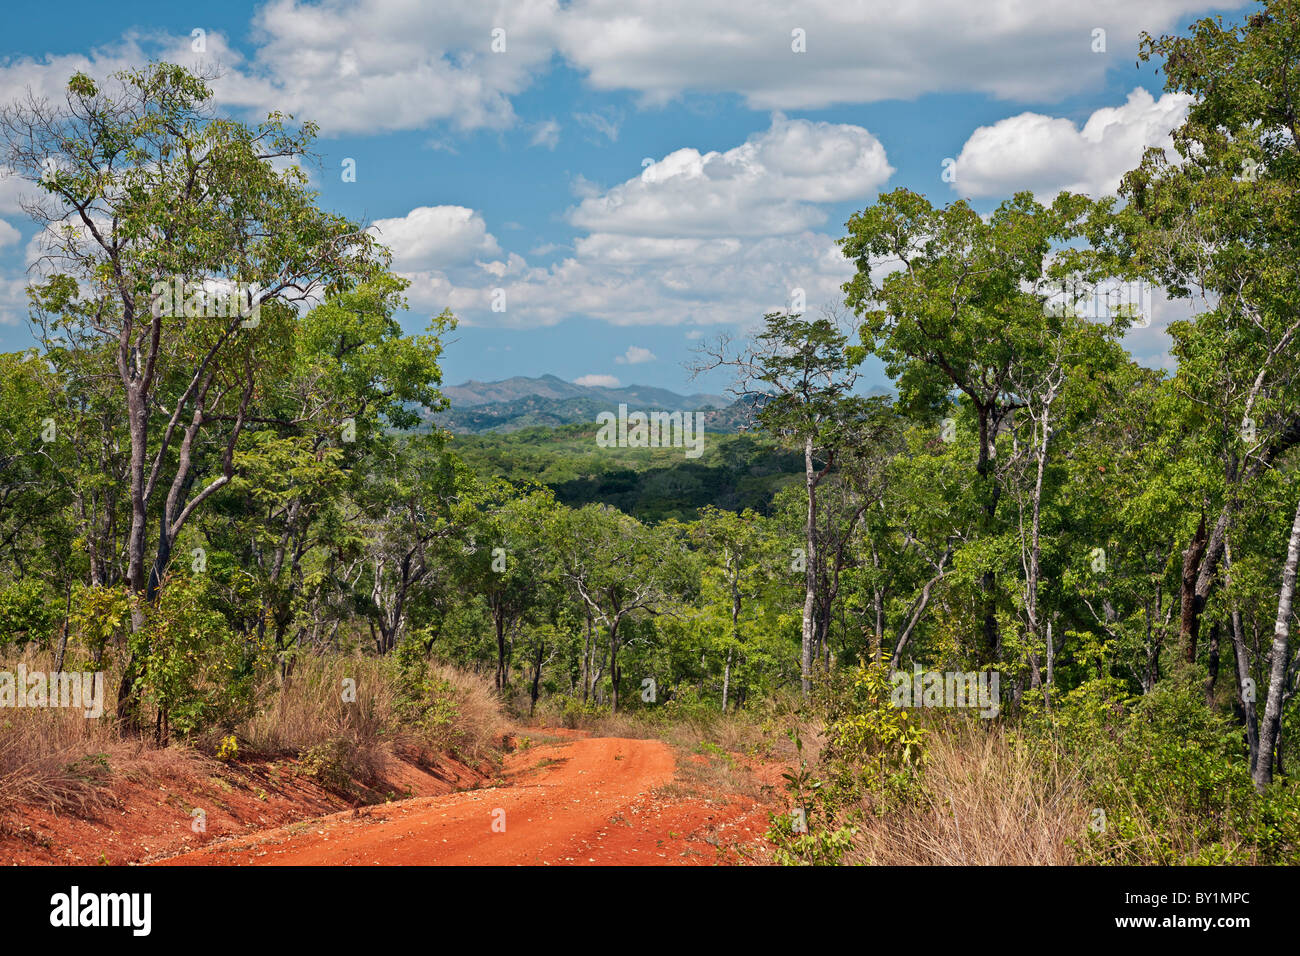 Une vue sur les collines et la forêt indigène dans les bas-fonds de la vallée du Kilombero Tanzanie s Southern Highlands. Banque D'Images